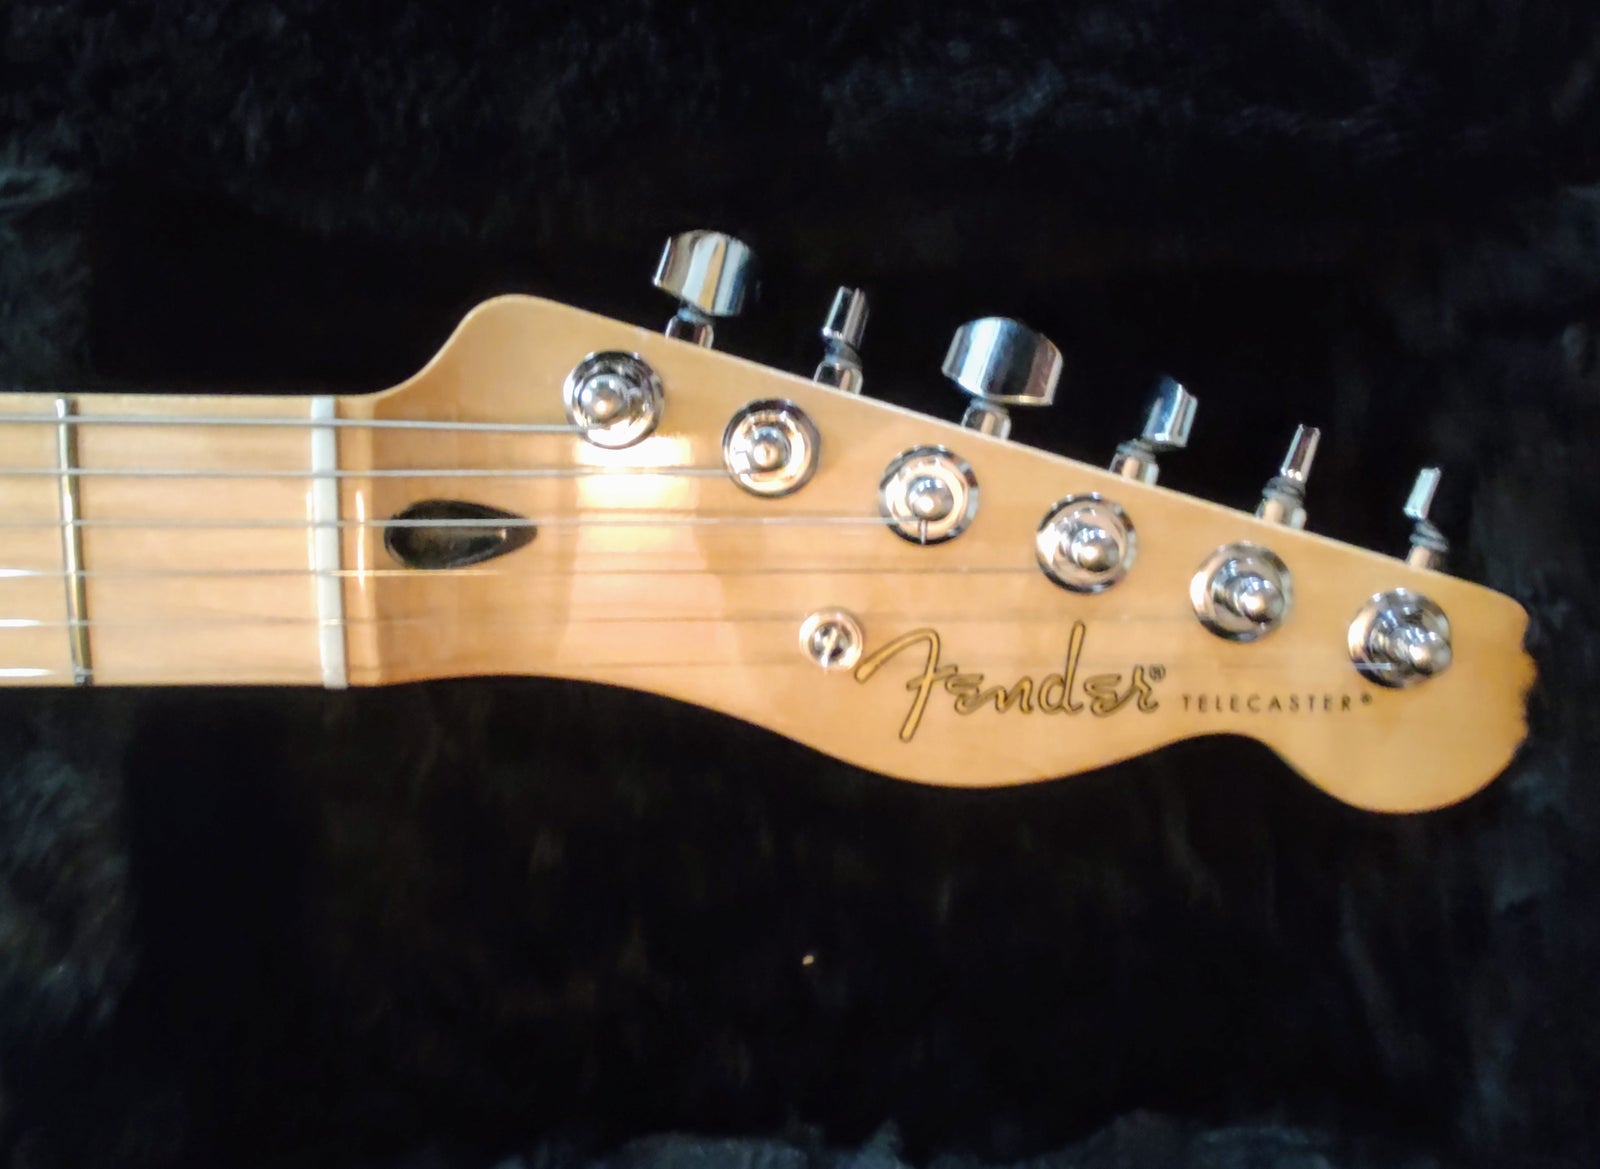 Elguitar, Fender Telecaster Special Edition